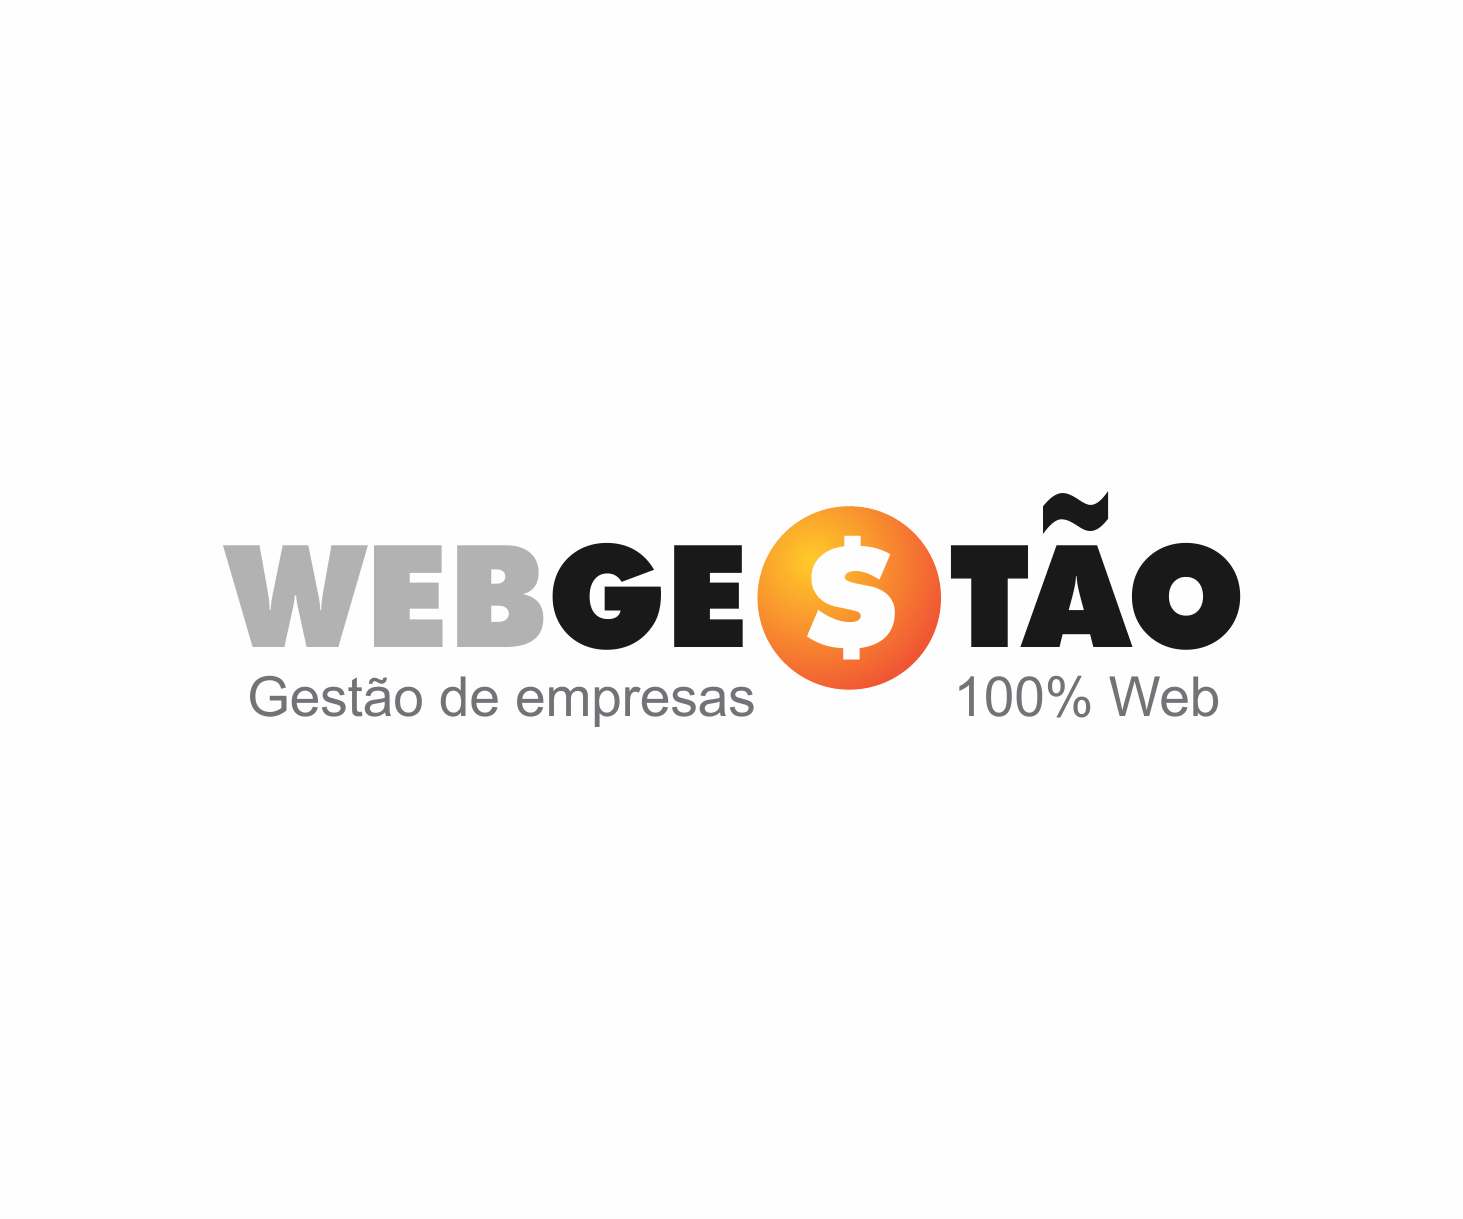 WebGestão